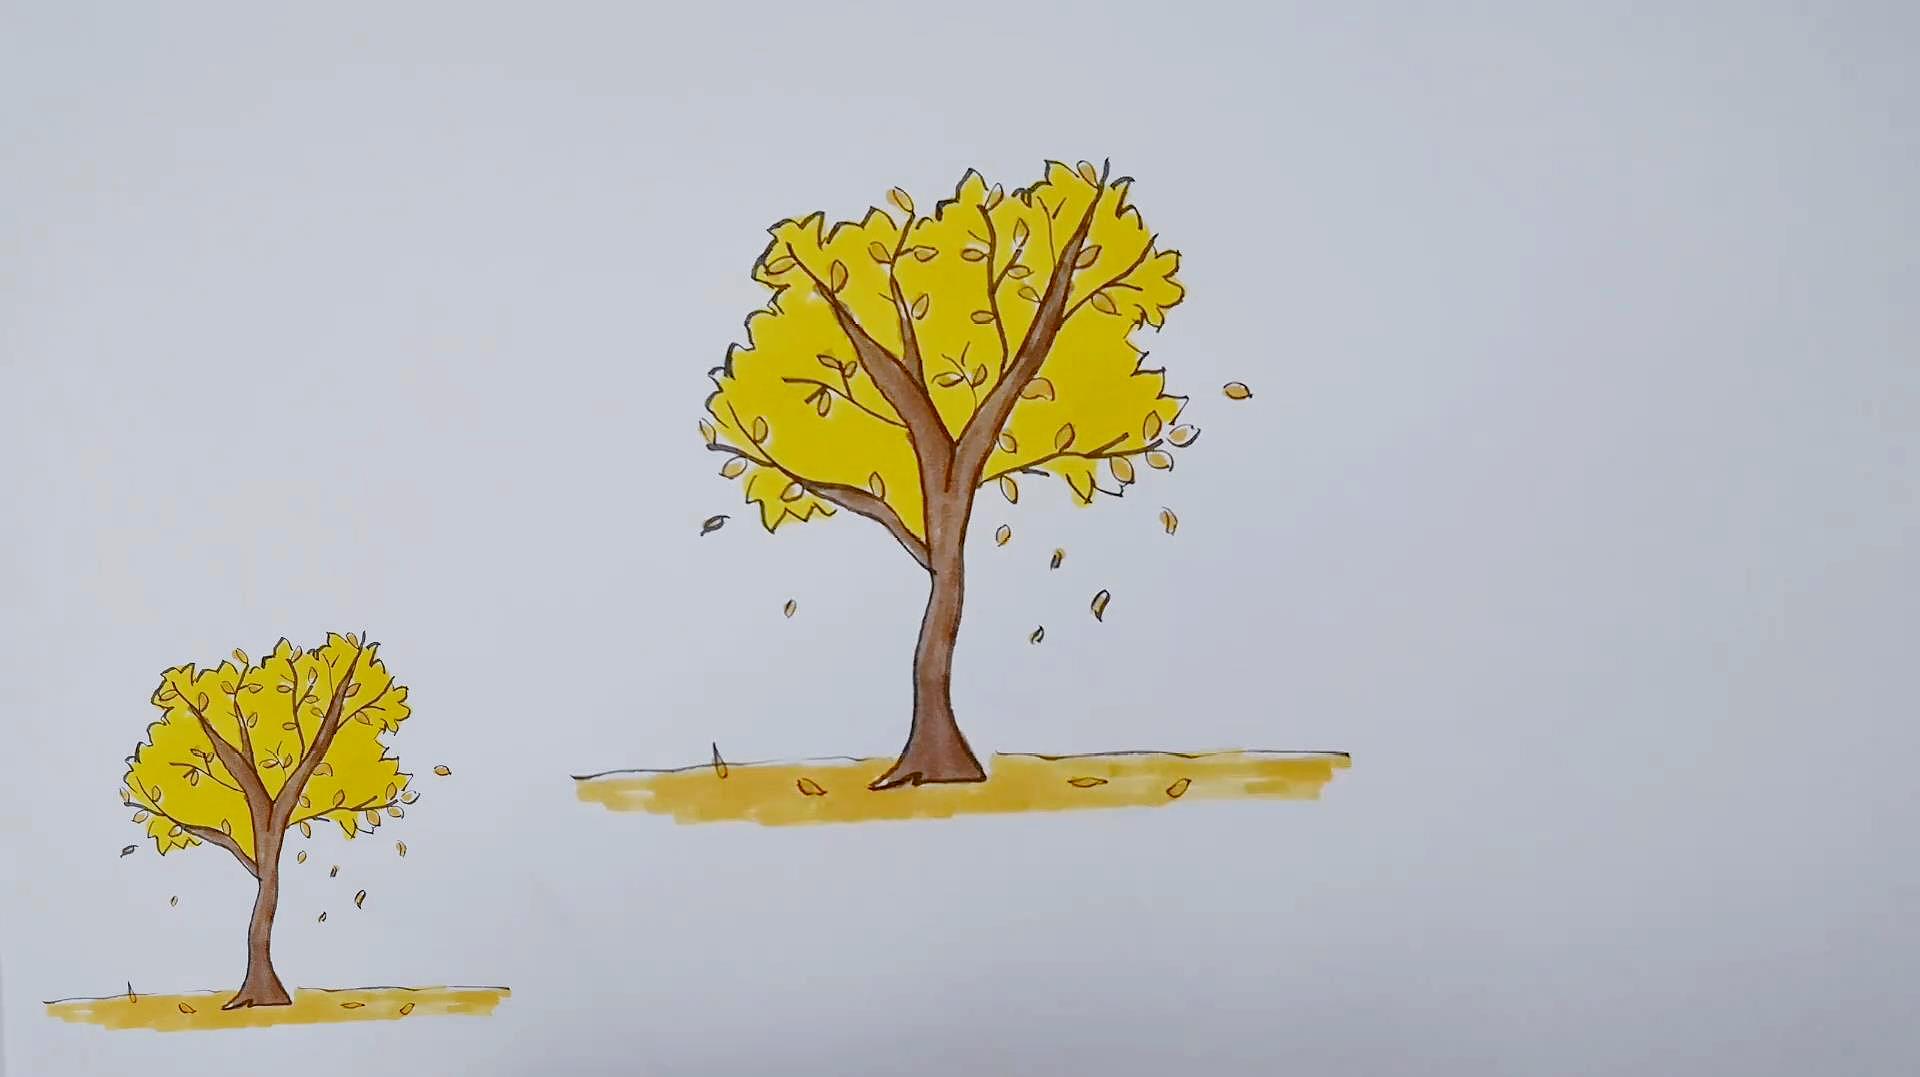 秋天的画简笔画教程:秋天的树叶真漂亮,你学会了吗